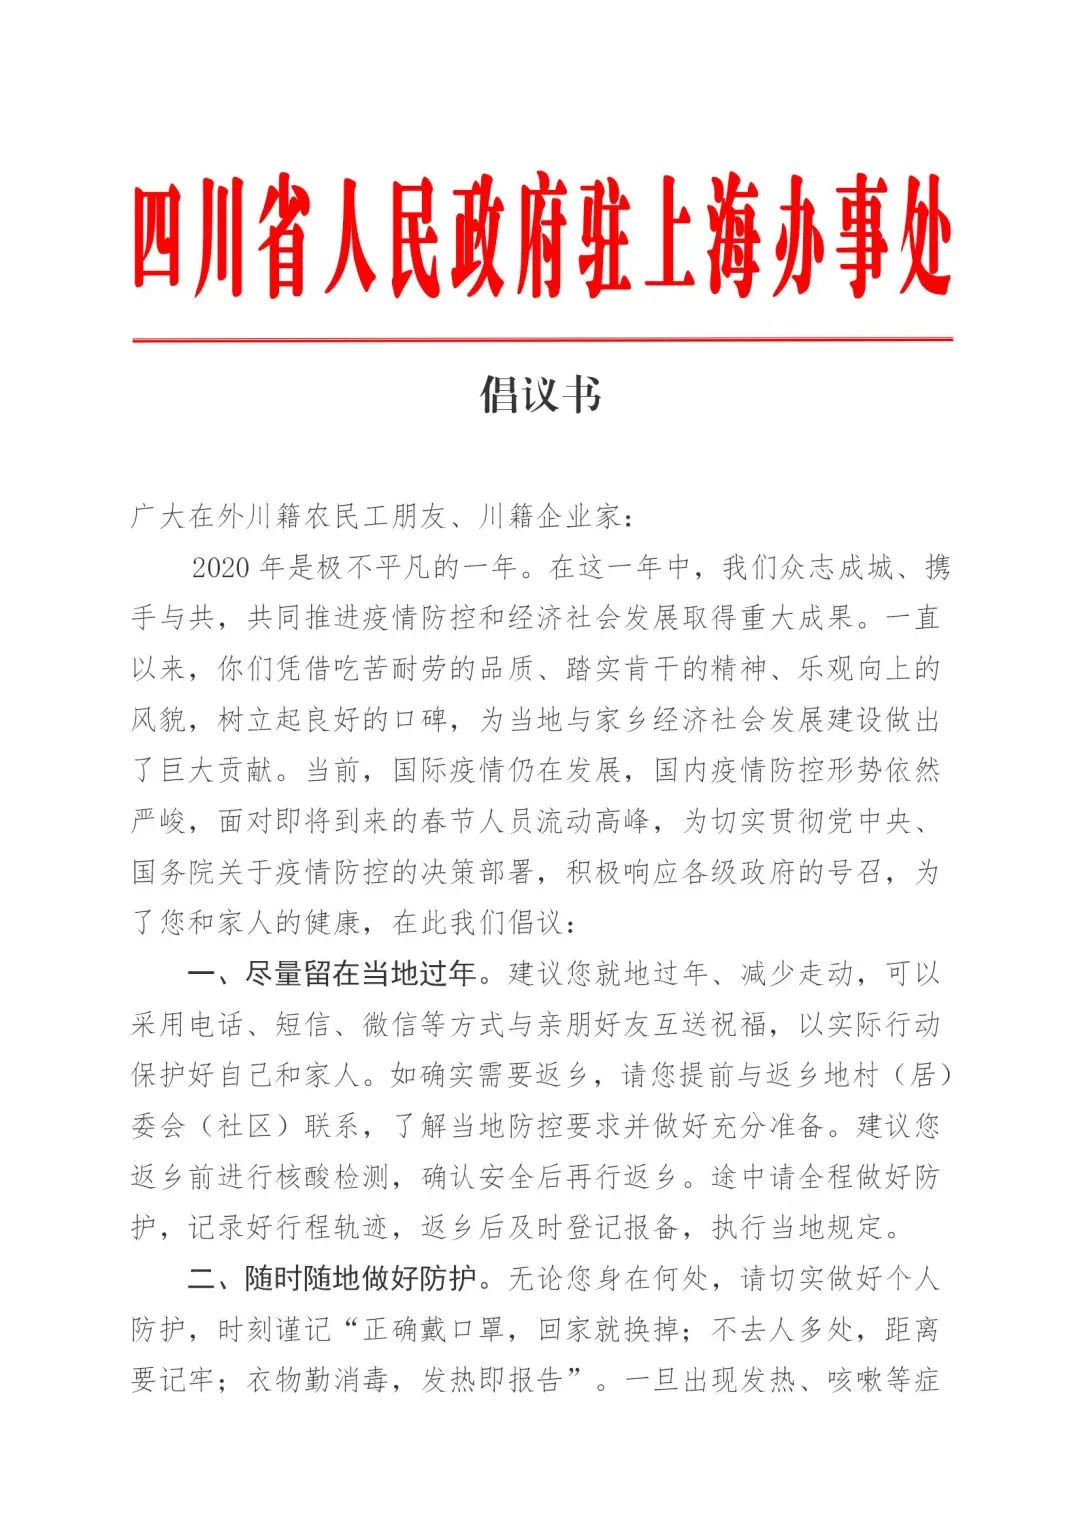 【倡议书】四川省人民政府驻上海办事处、泛长三角四川商会联盟疫情防控倡议书